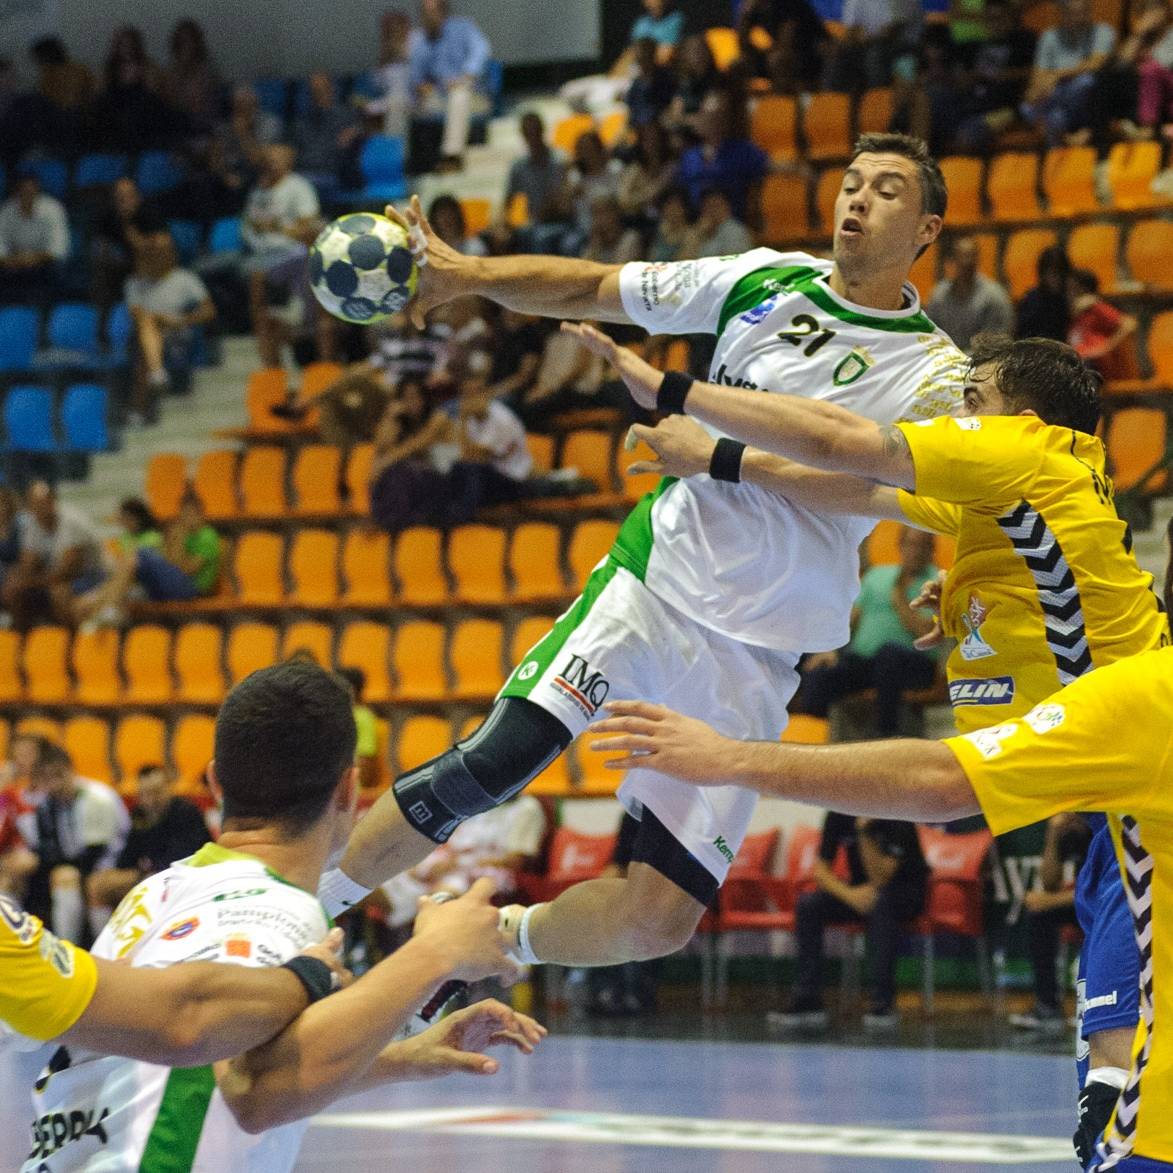 traumatismes au handball : au niveau du genou et de la cheville mais aussi au niveau de l’épaule et de la main